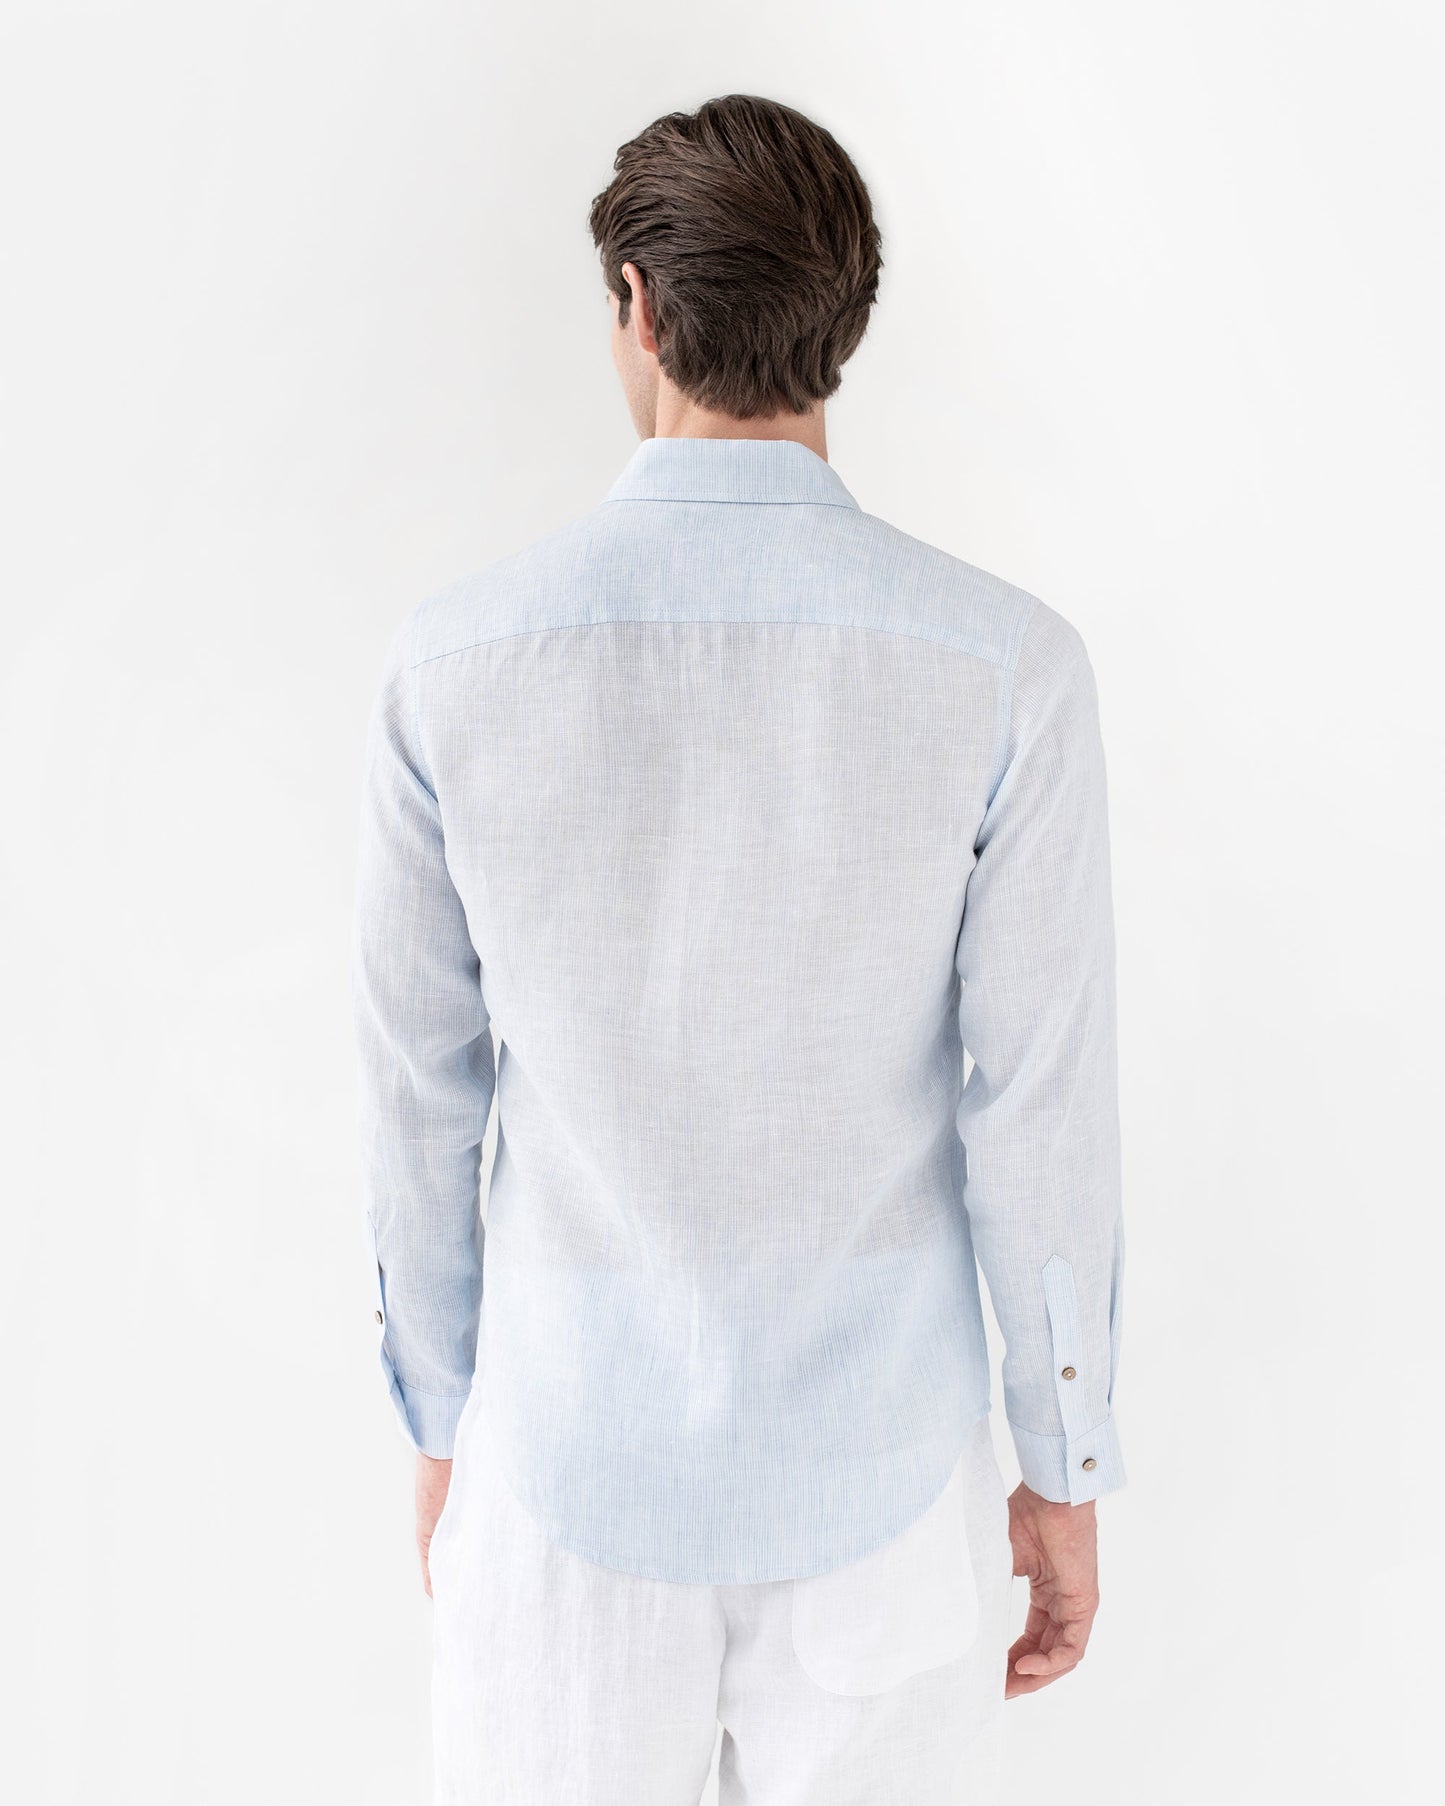 Men's linen shirt NEVADA in pinstripe blue - MagicLinen